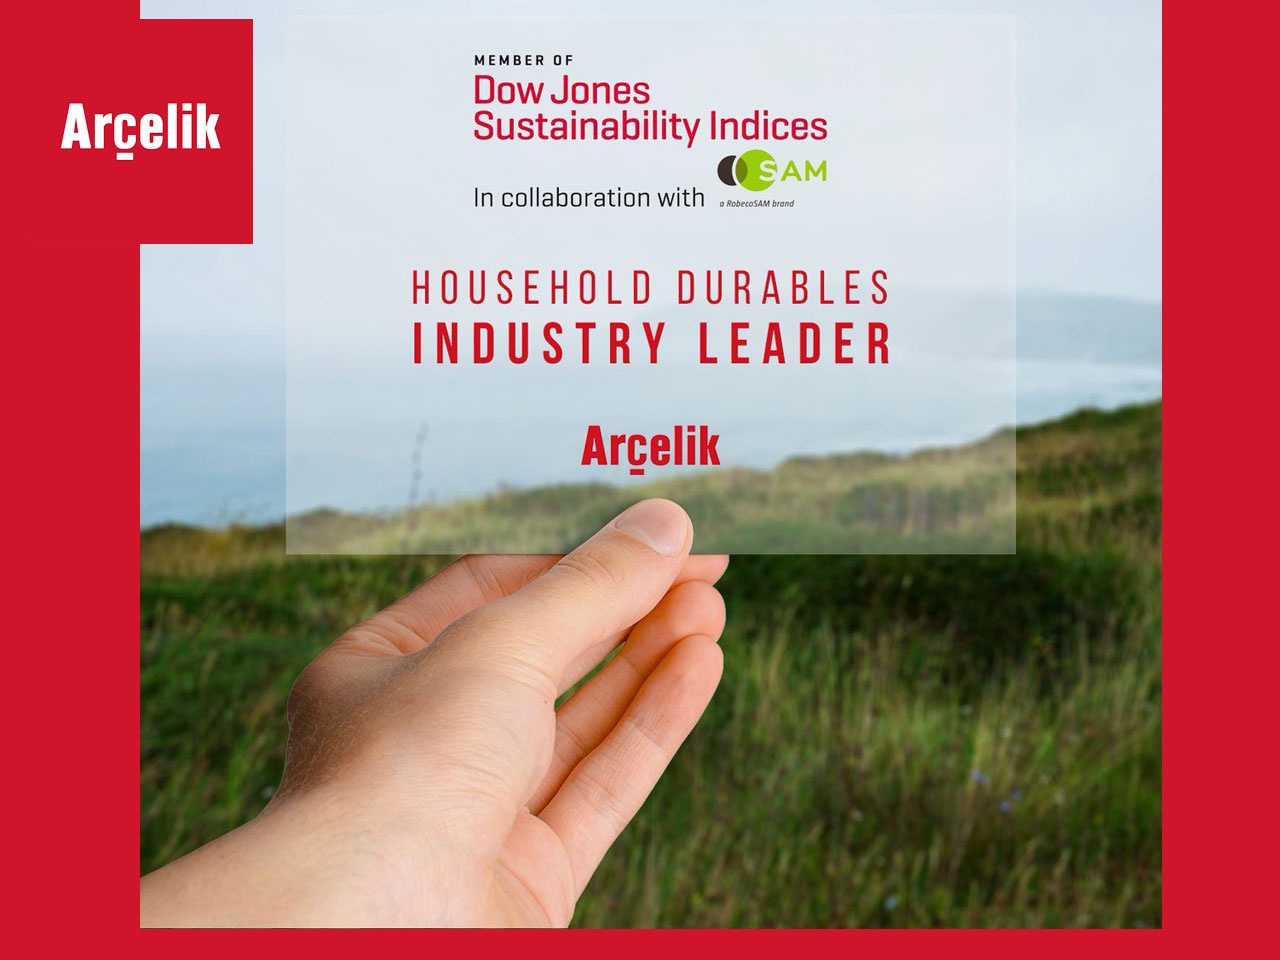 Le Groupe Arçelik, reconnu leader du secteur des biens de consommation durables par le DJSI